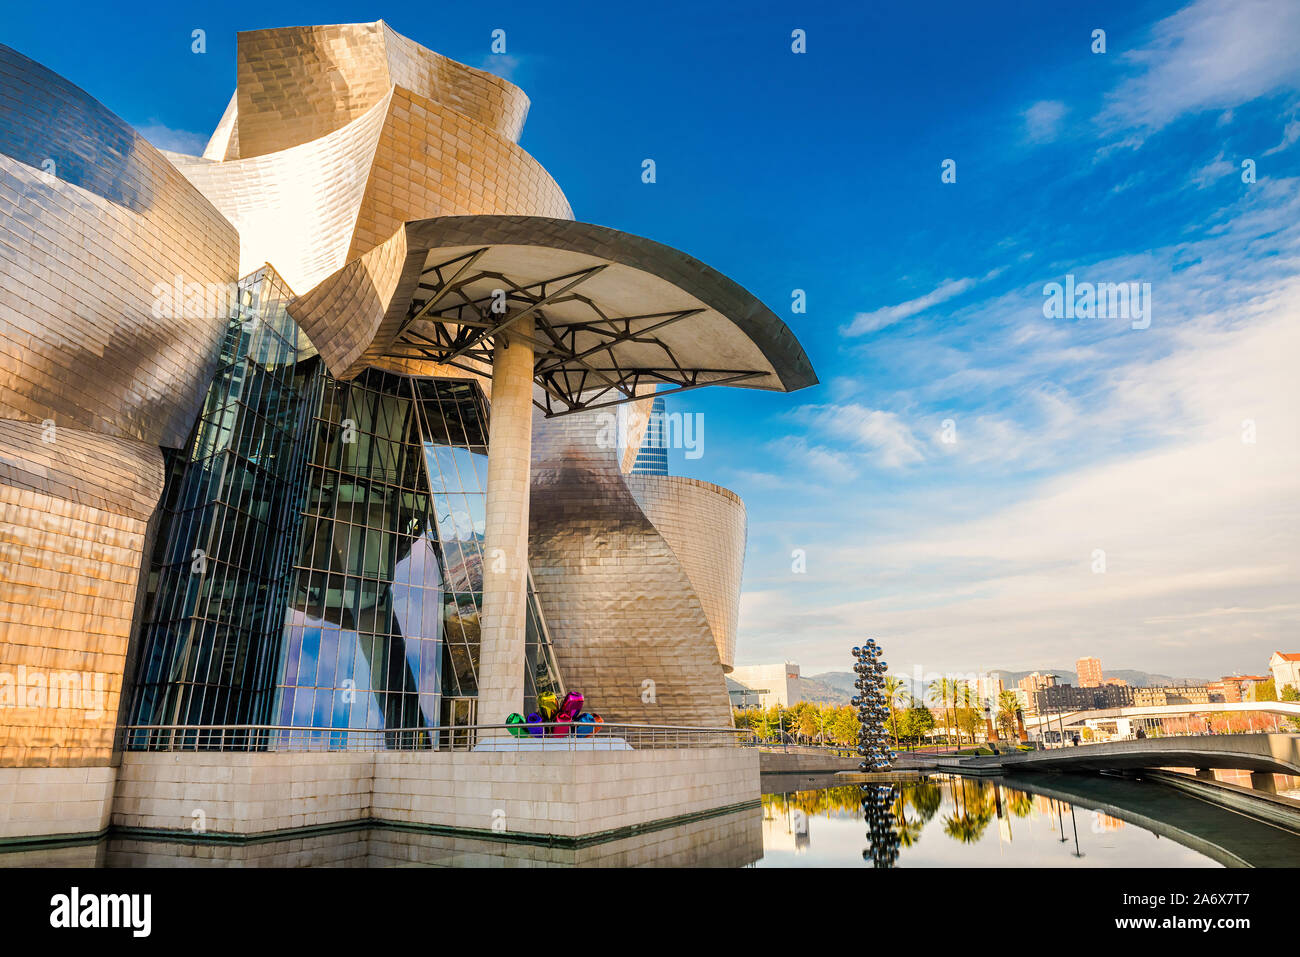 La ville de Bilbao, Espagne, en novembre 19, 2015 - des photos de l'Espagne - Voyage d'Europe, novembre 19, 2015 Banque D'Images